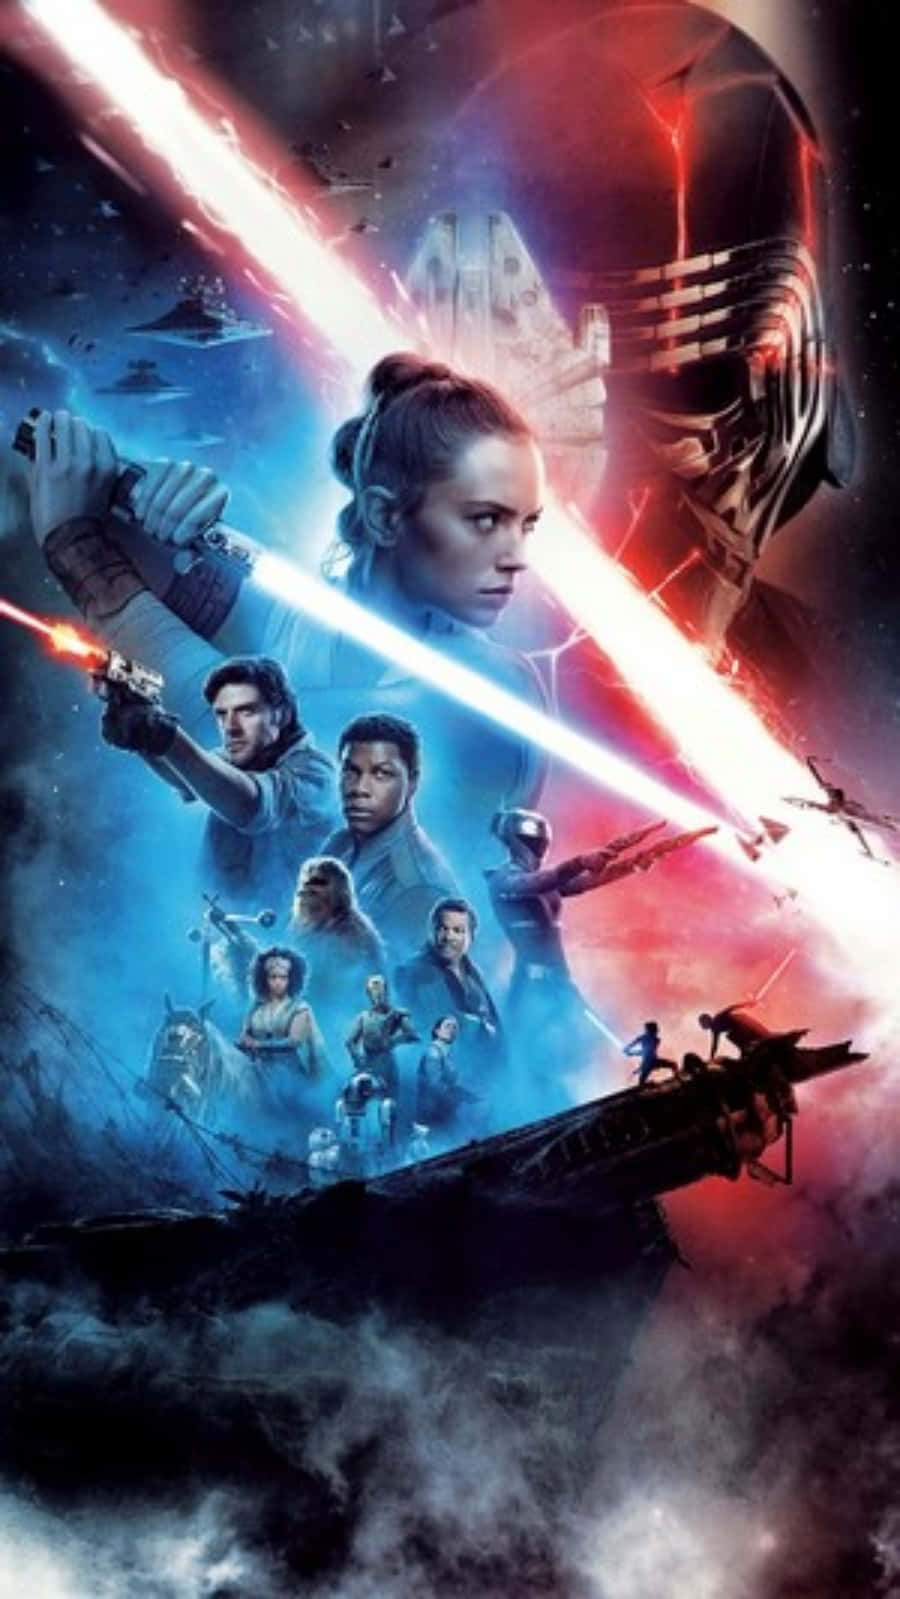 Starwars: Der Aufstieg Skywalkers Poster